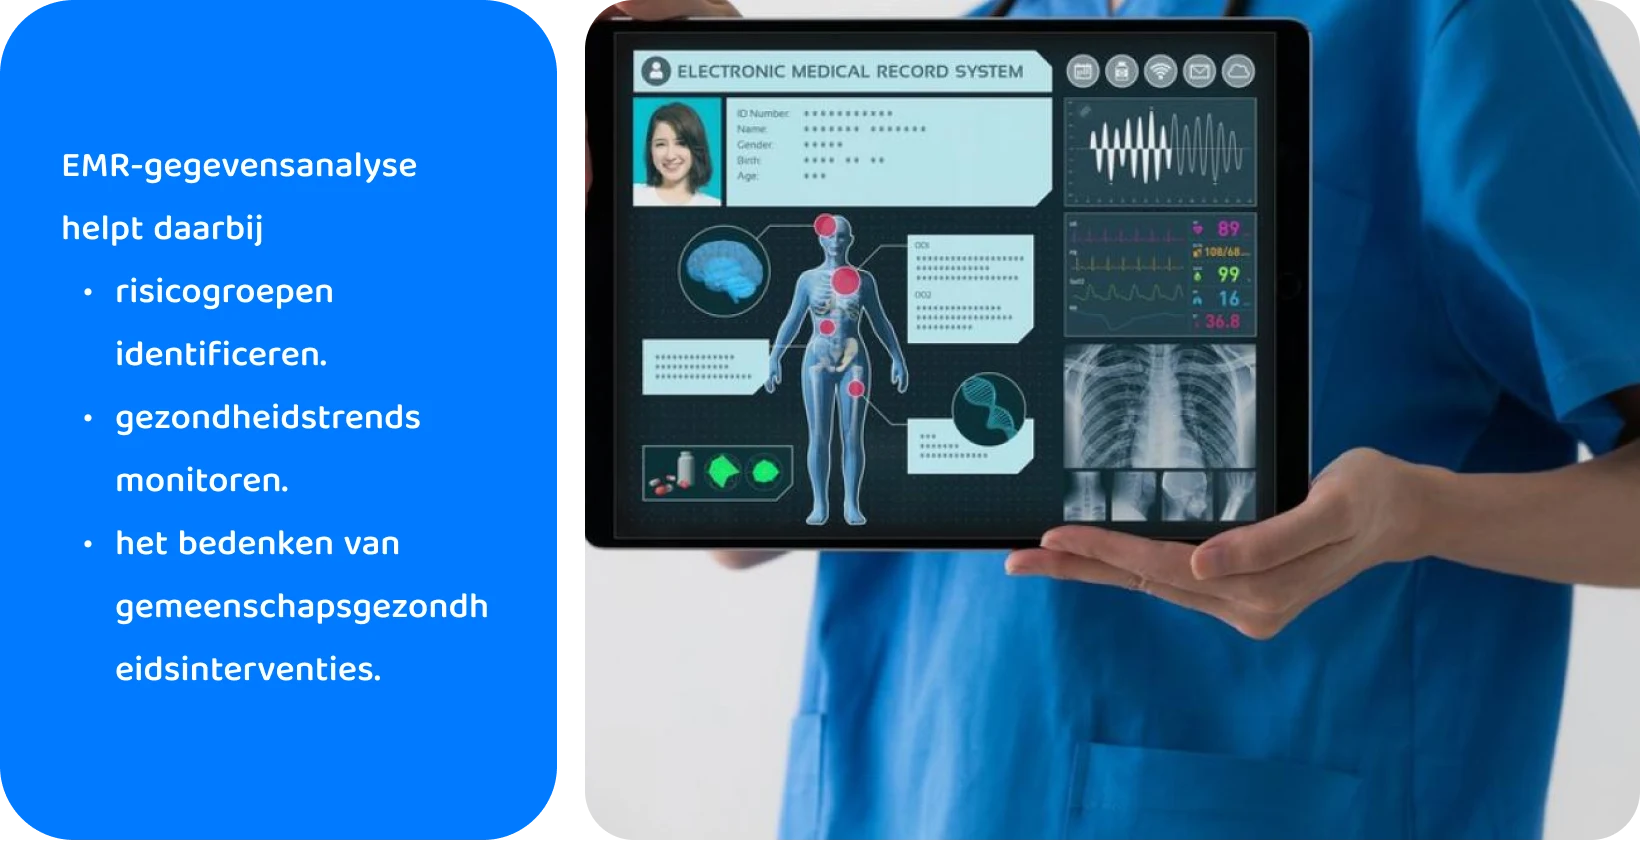 Medische professional die een tablet met een elektronisch medisch dossiersysteem gebruikt om gezondheidsgegevens van patiënten te analyseren.